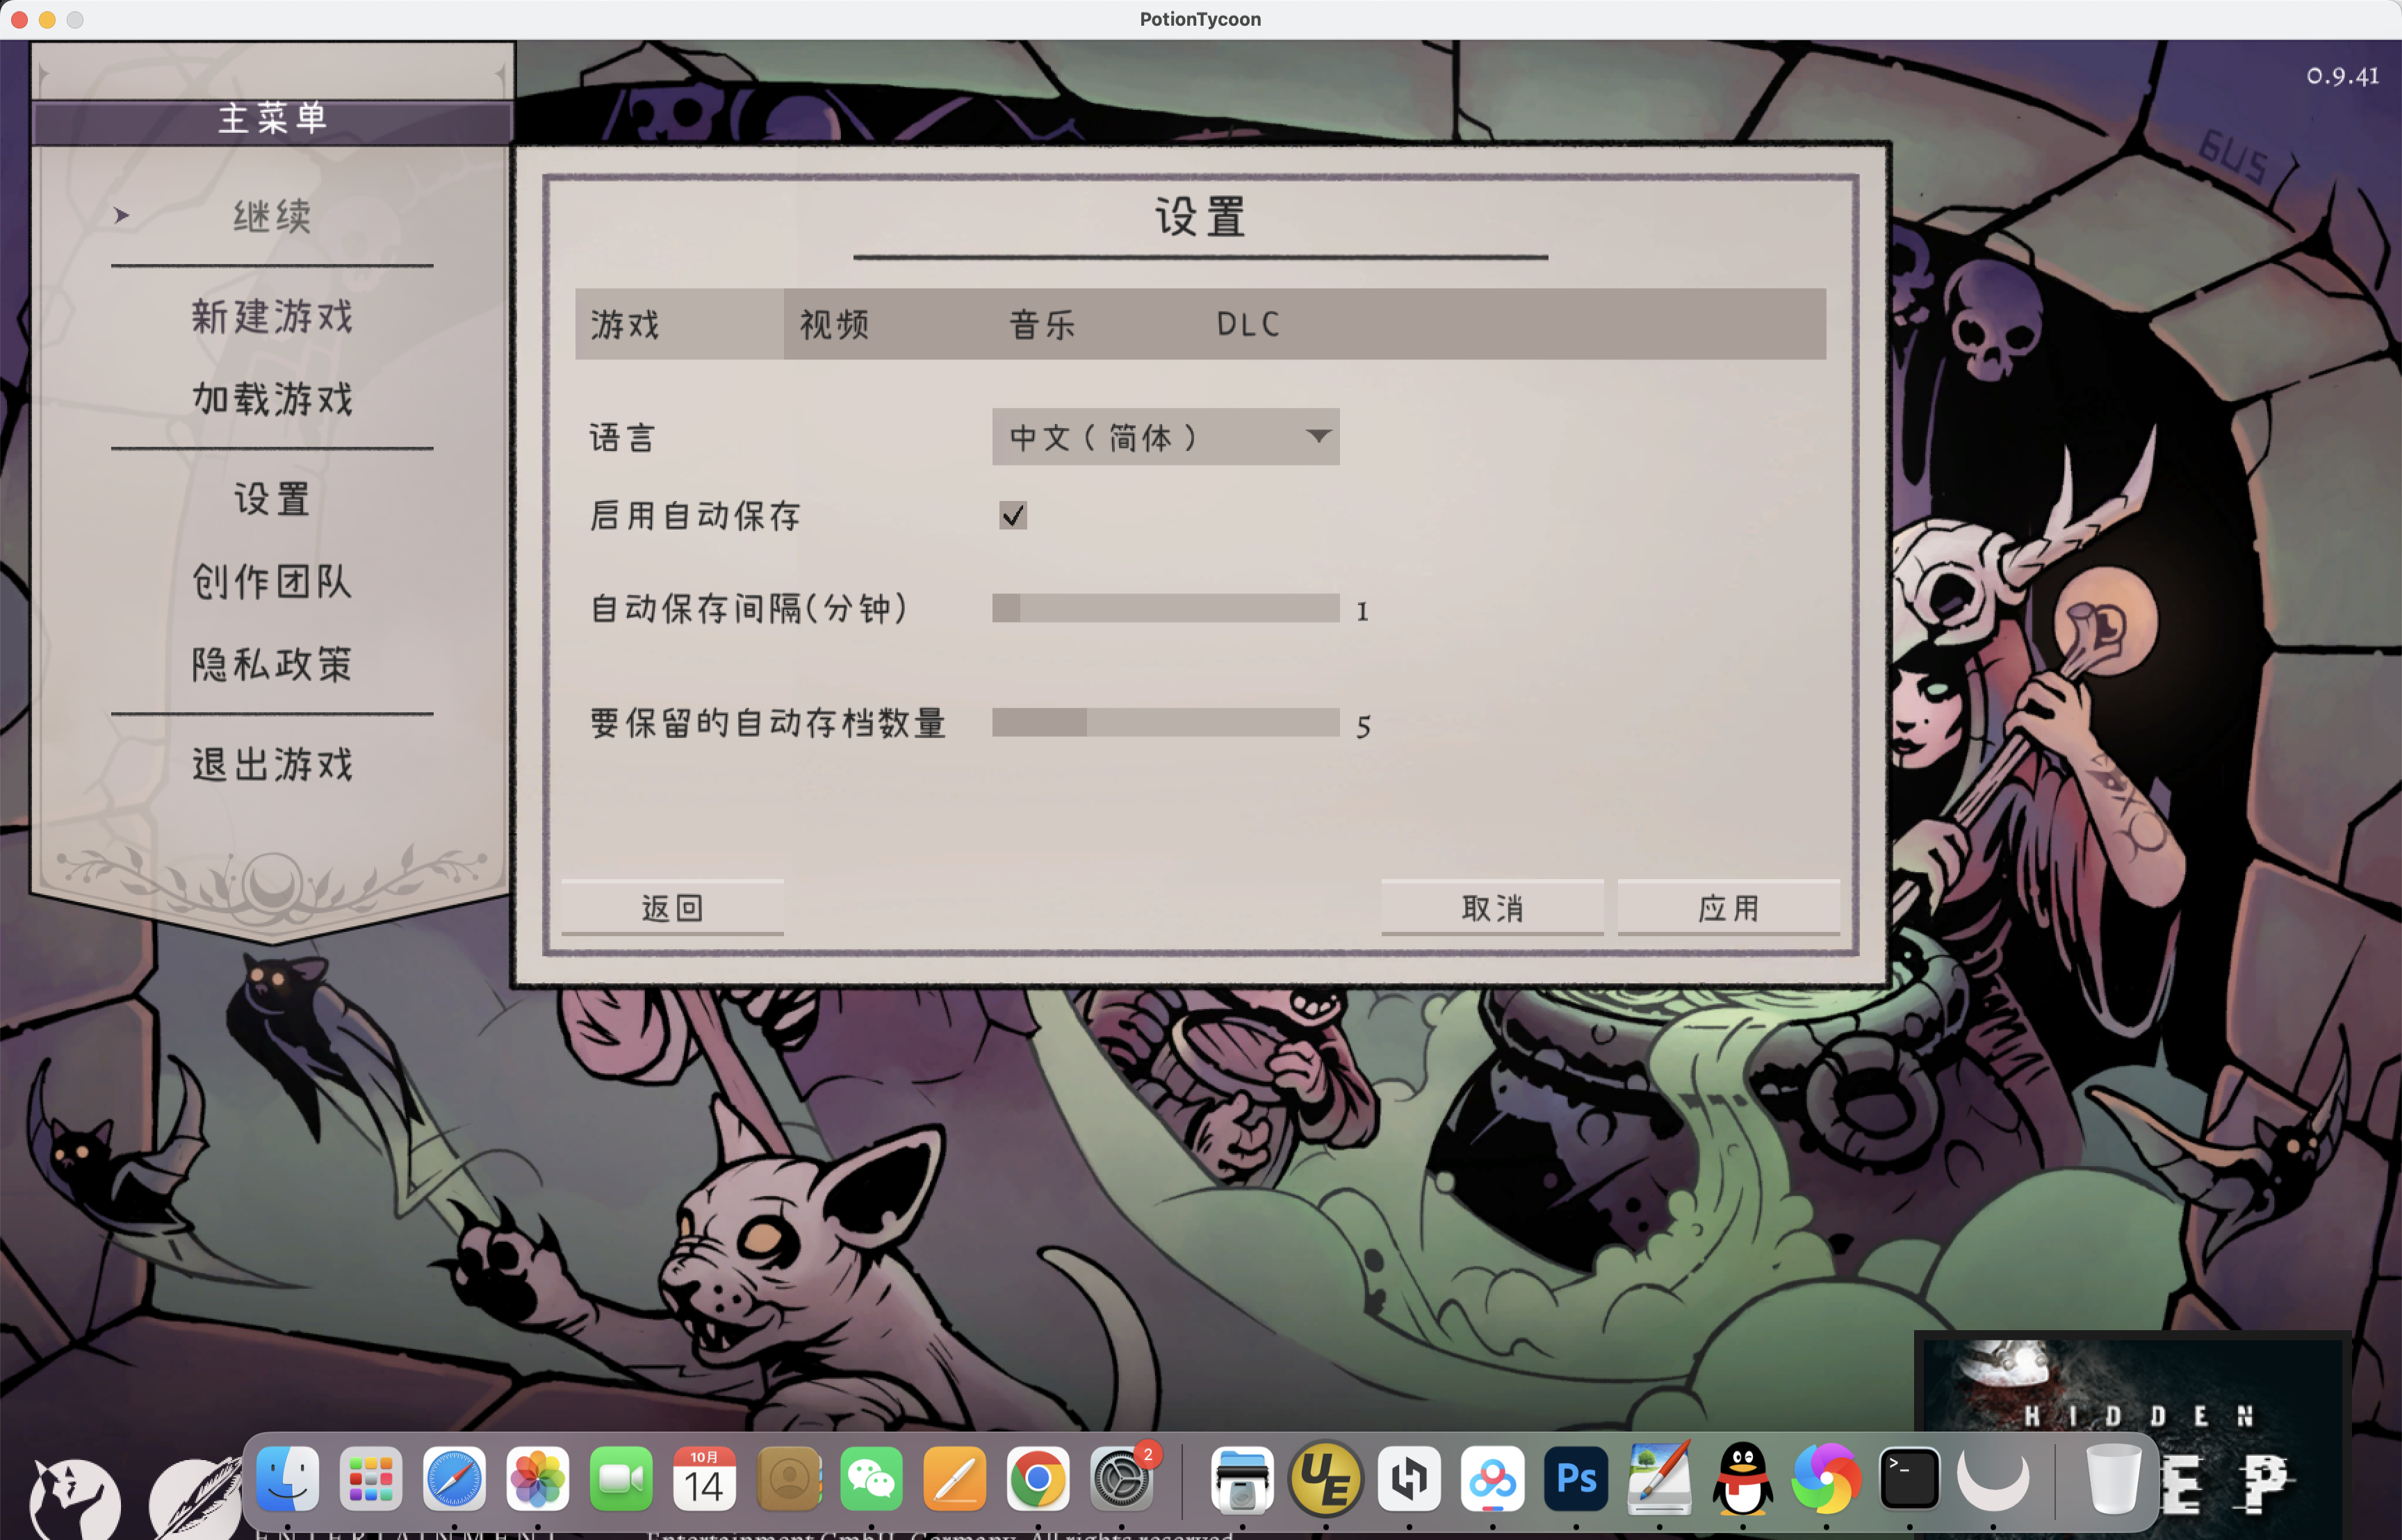 药剂大亨 for Mac v0.9.41 Potion Tycoon 中文移植版 苹果电脑